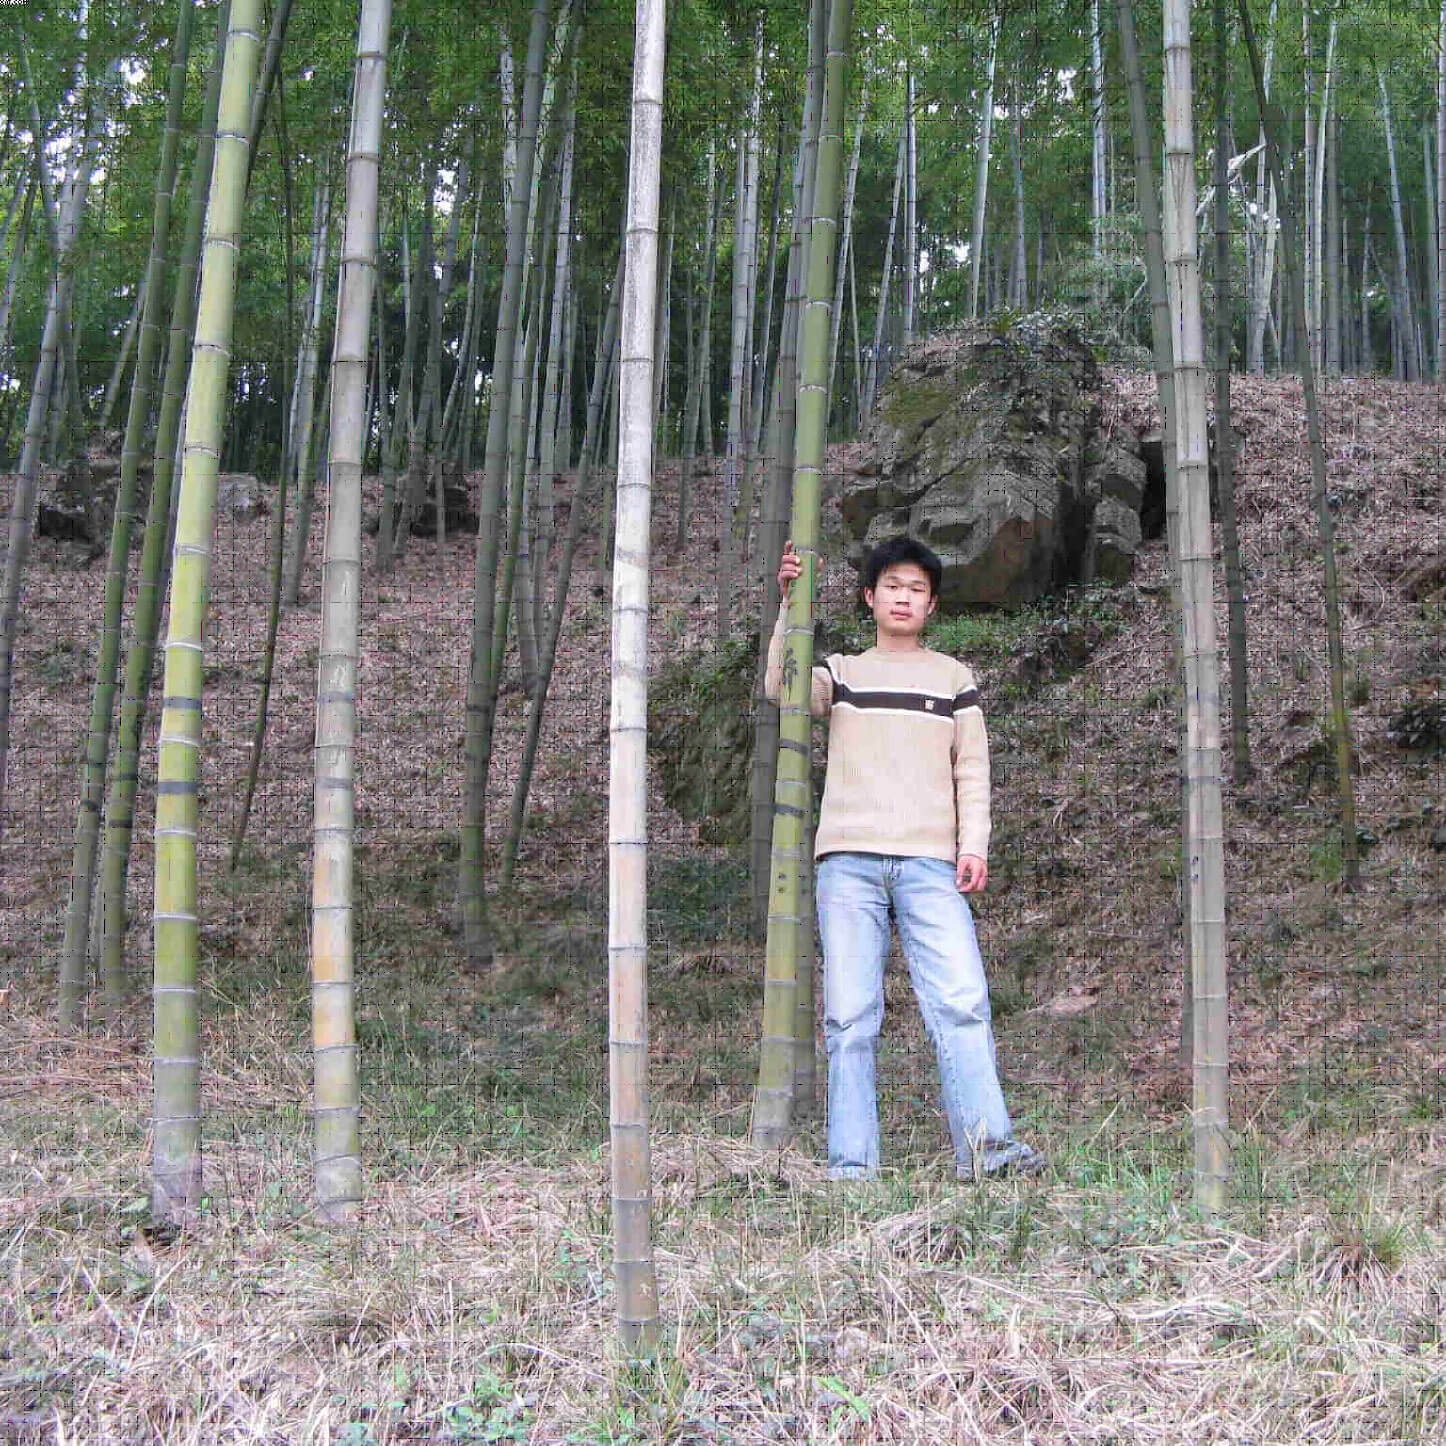 bosque bambu natural